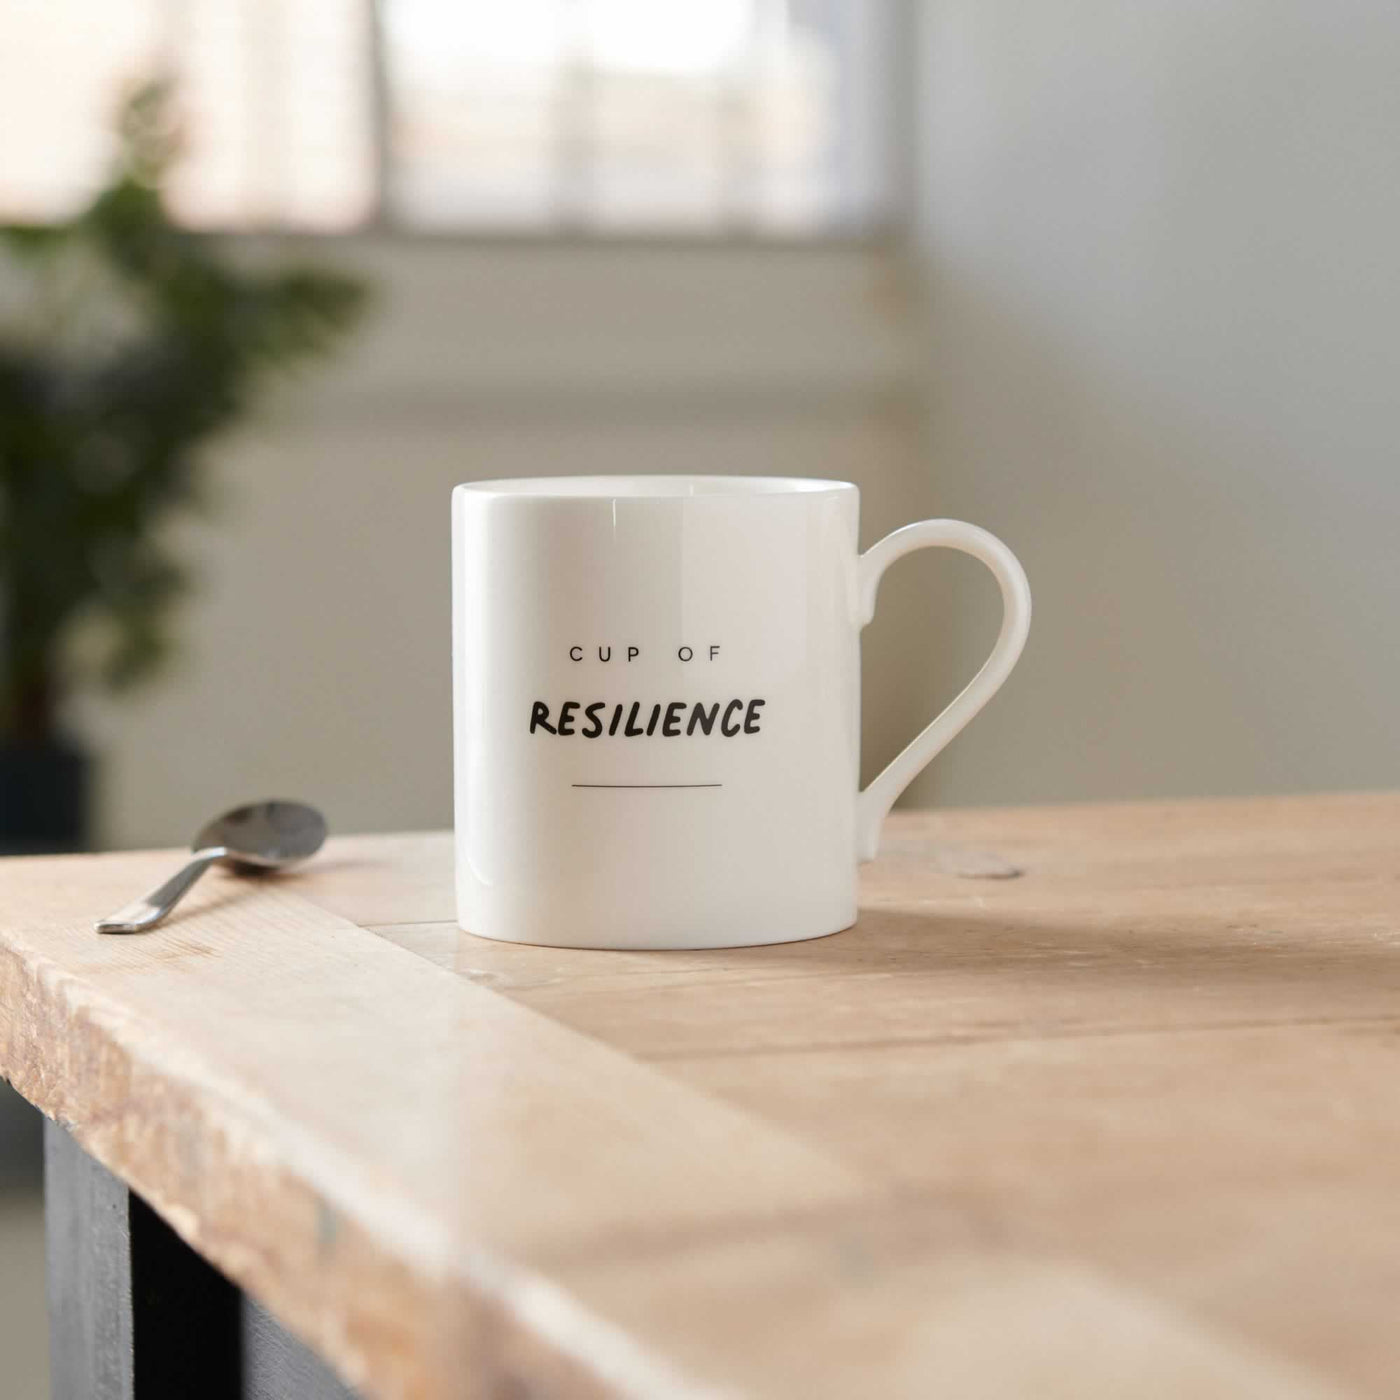 Cup of Resilience Mug on Table